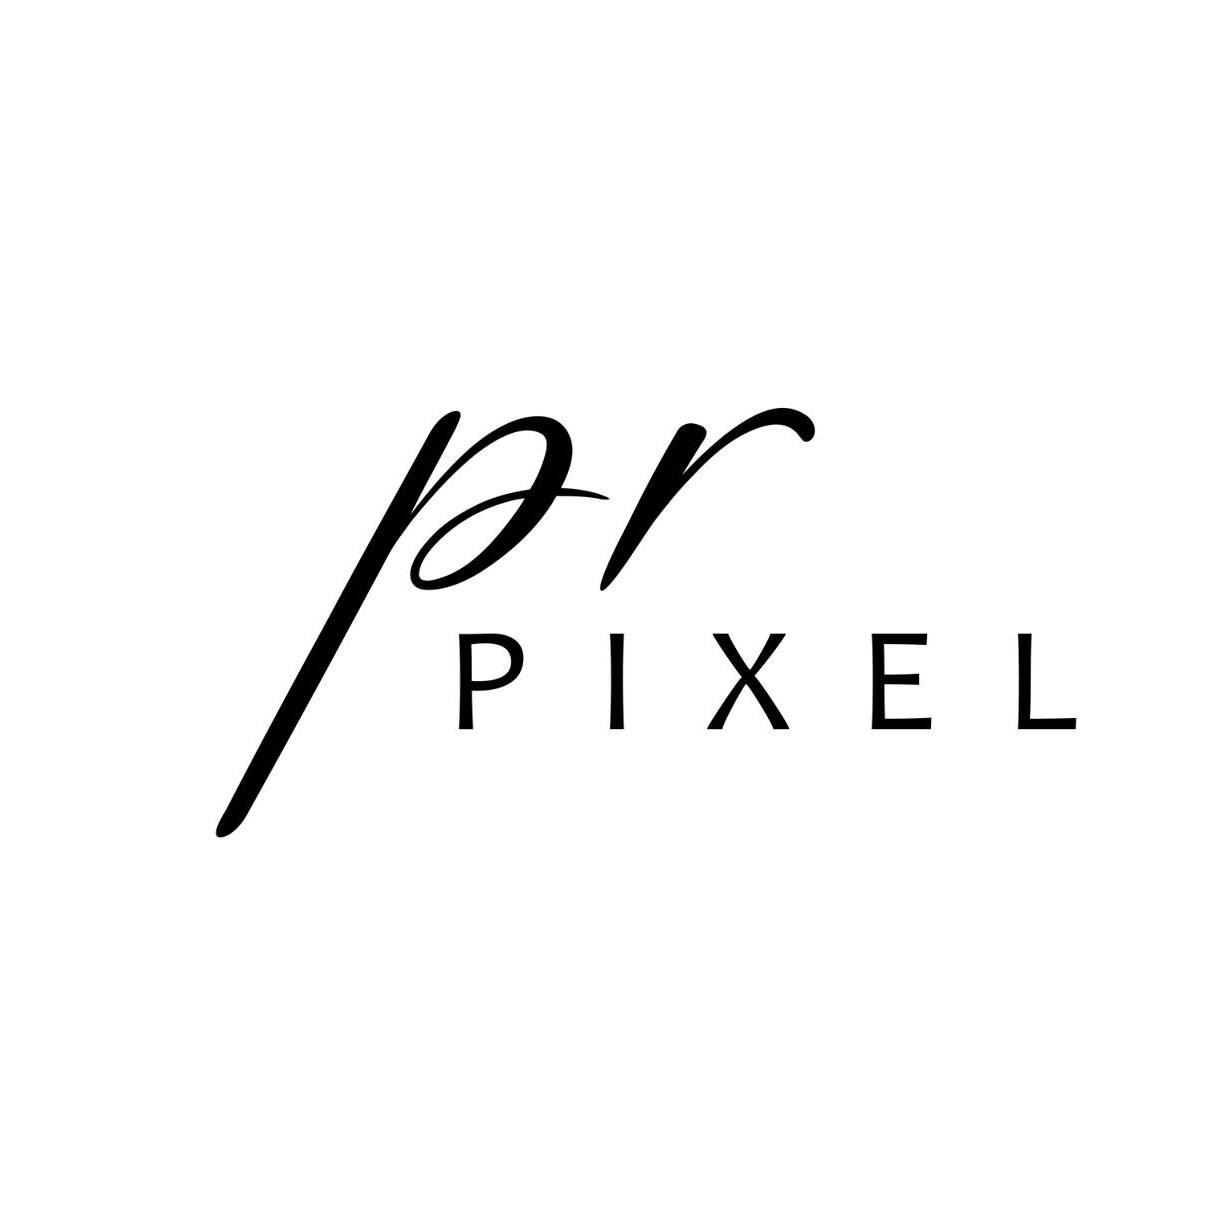 PR PIXEL|Photographer|Event Services